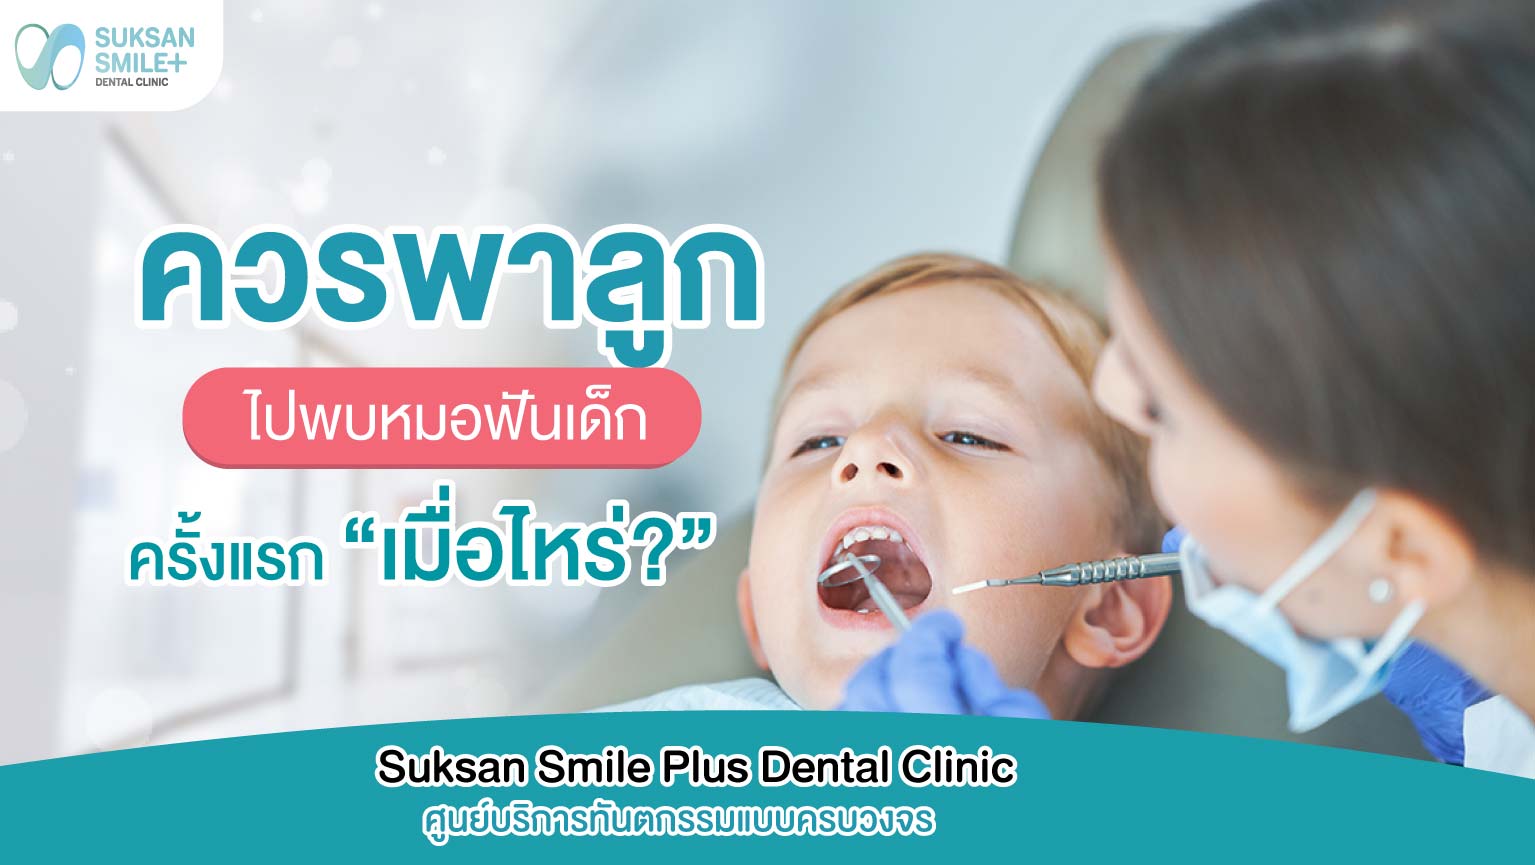 ควรพาลูกไปพบหมอฟันเด็กครั้งแรกเมื่อไหร่